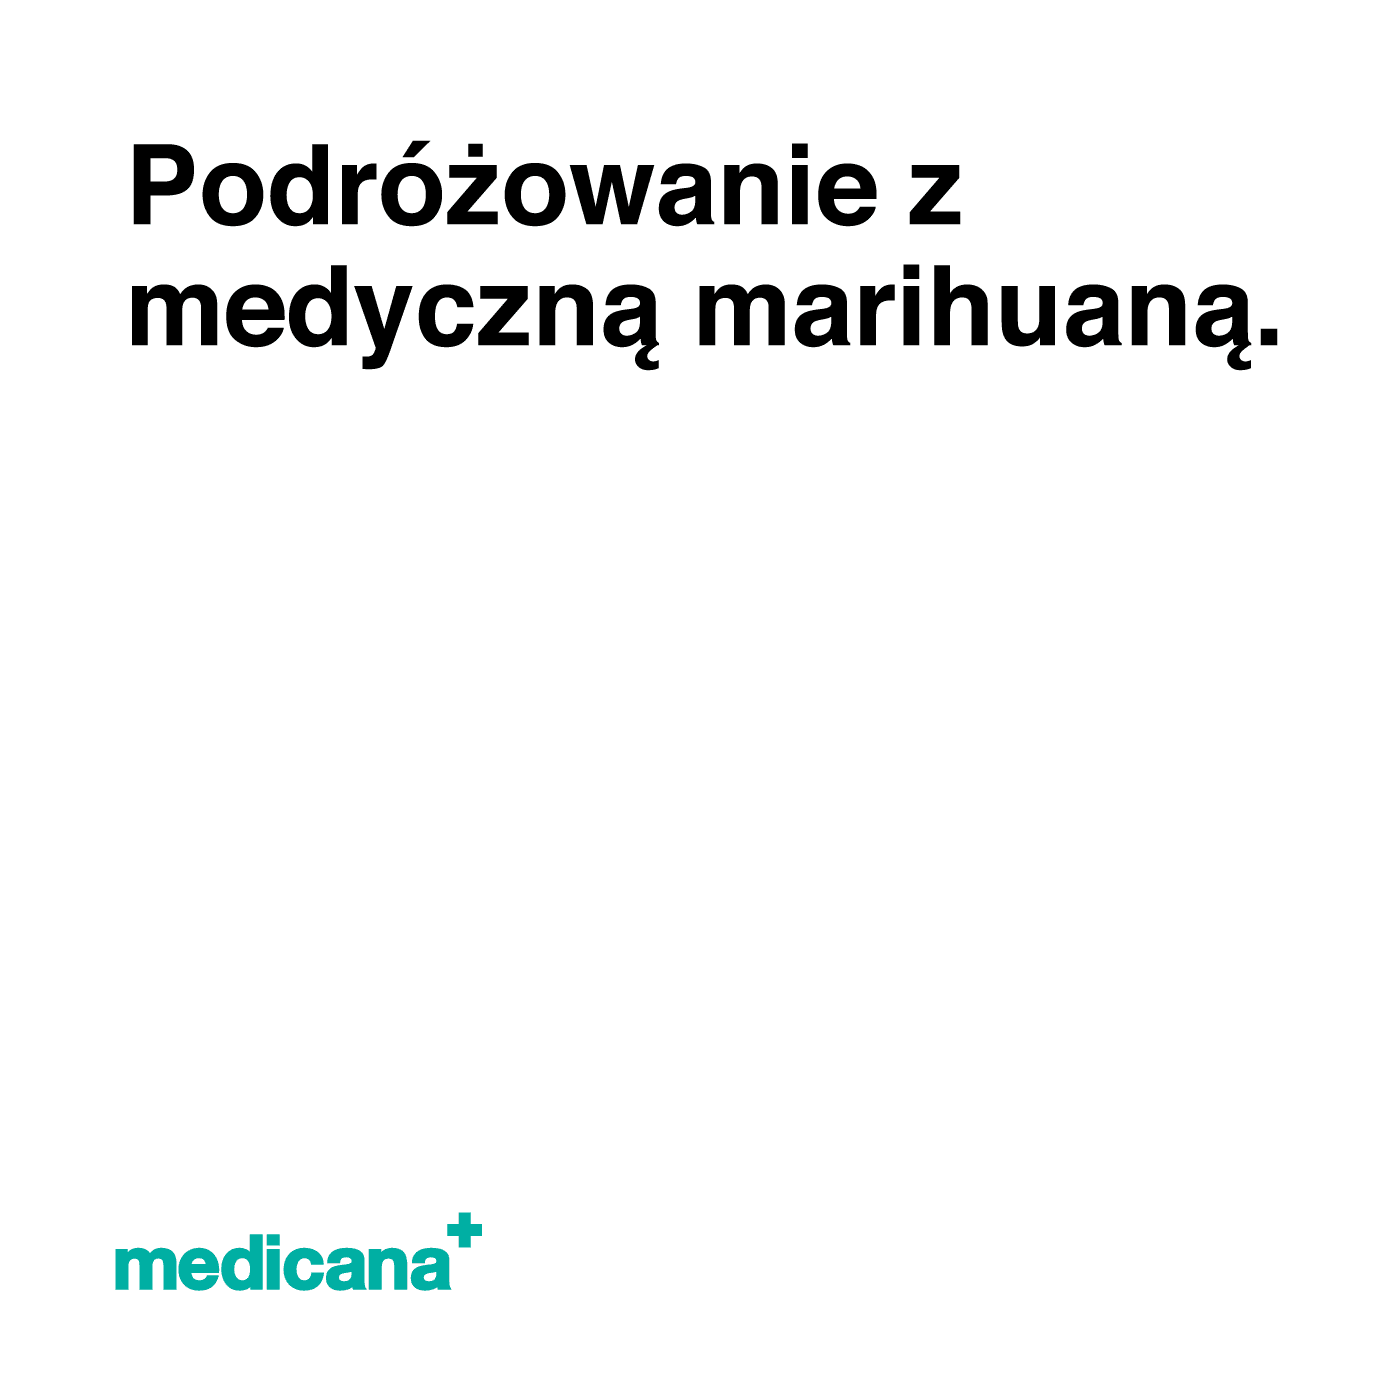 Grafika, białe tło z czarnym napisem Podróżowanie z medyczną marihuaną i logo Medicana Centrum Terapii Medyczna Marihuana w lewym dolnym rogu.